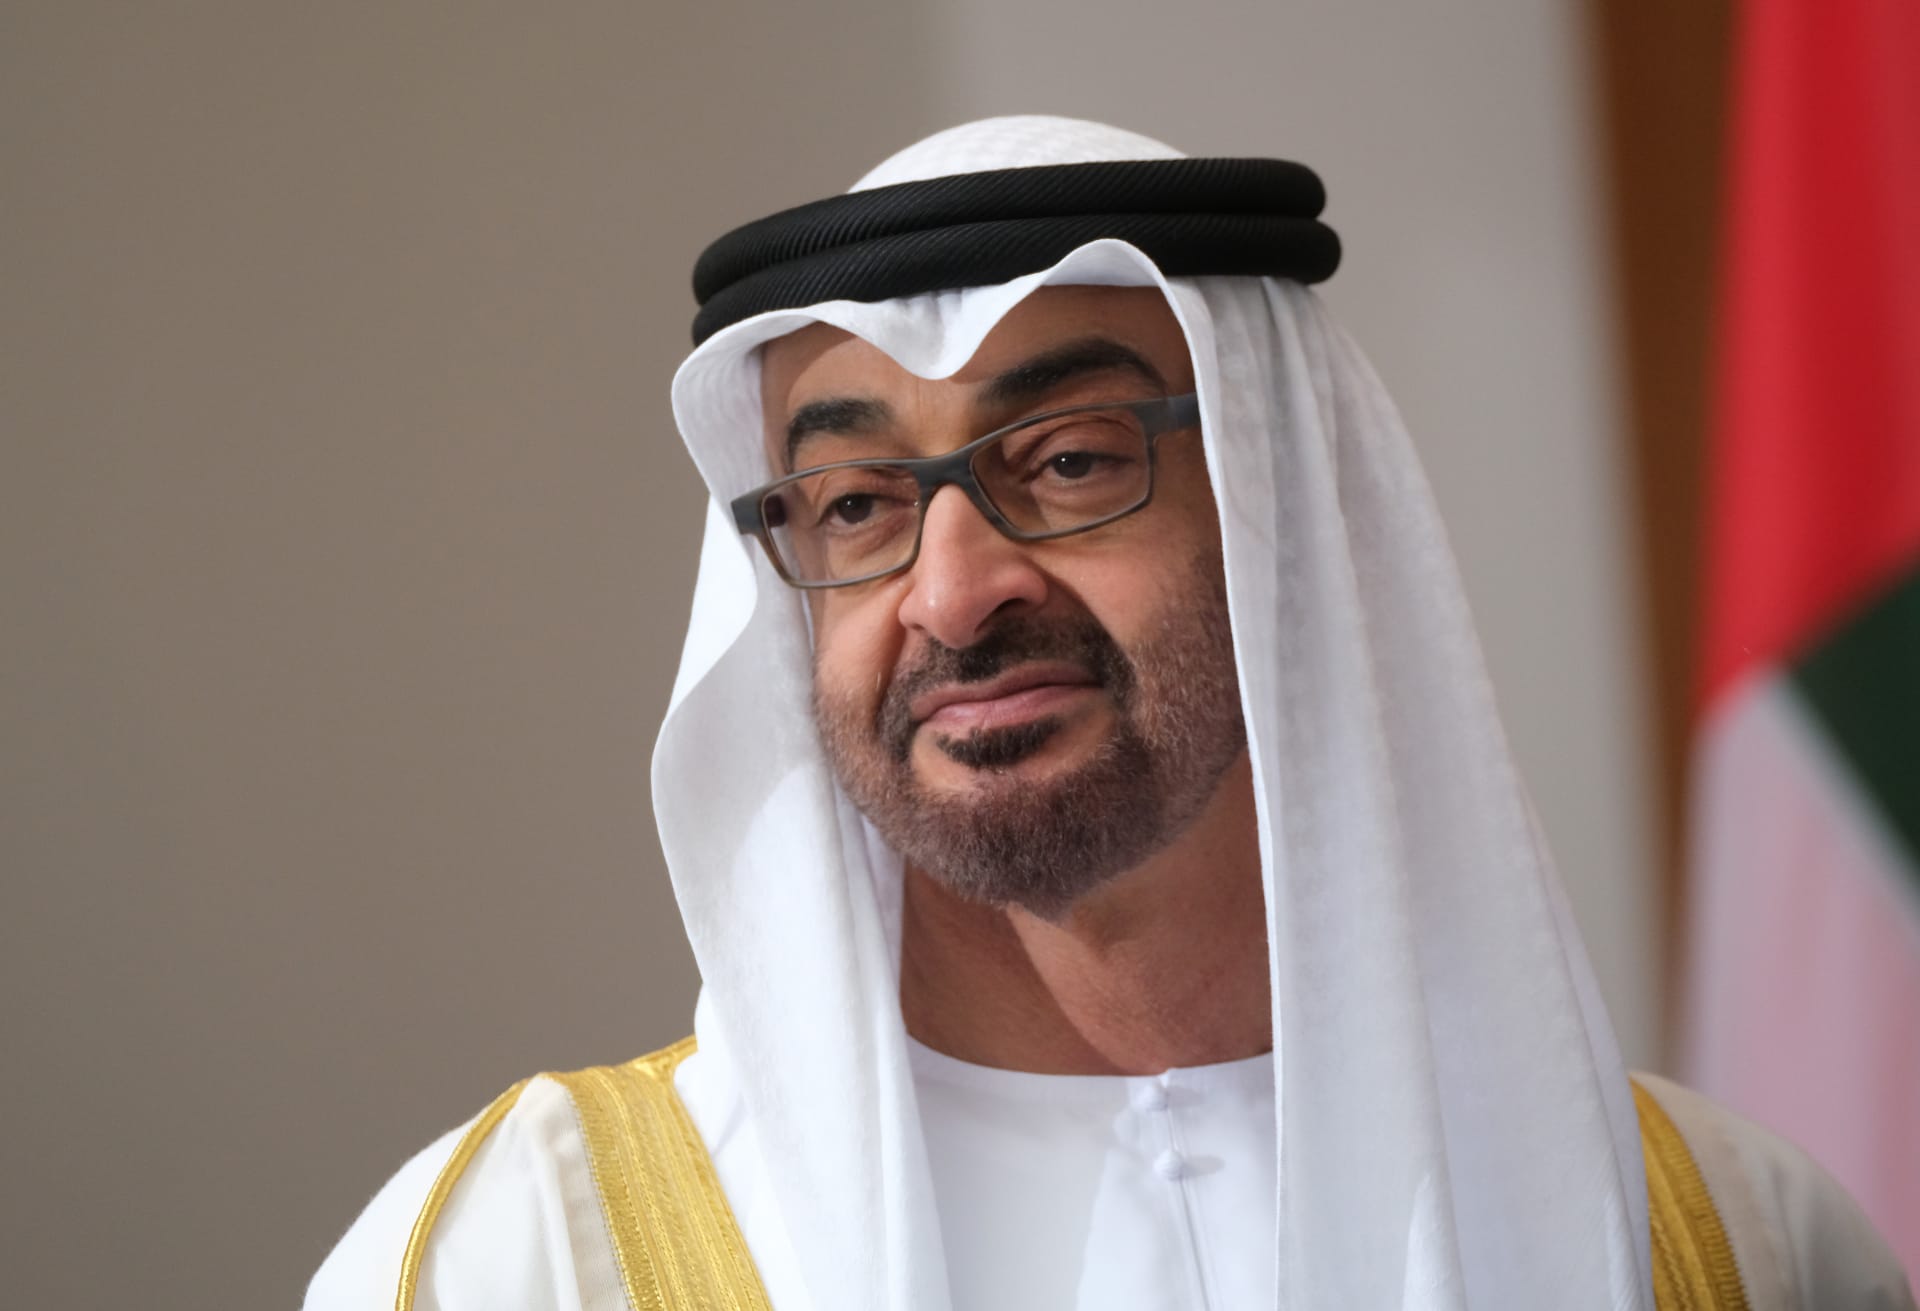  الشيخ محمد بن زايد ولي عهد أبوظبي نائب القائد الأعلى للقوات المسلحة الإماراتية